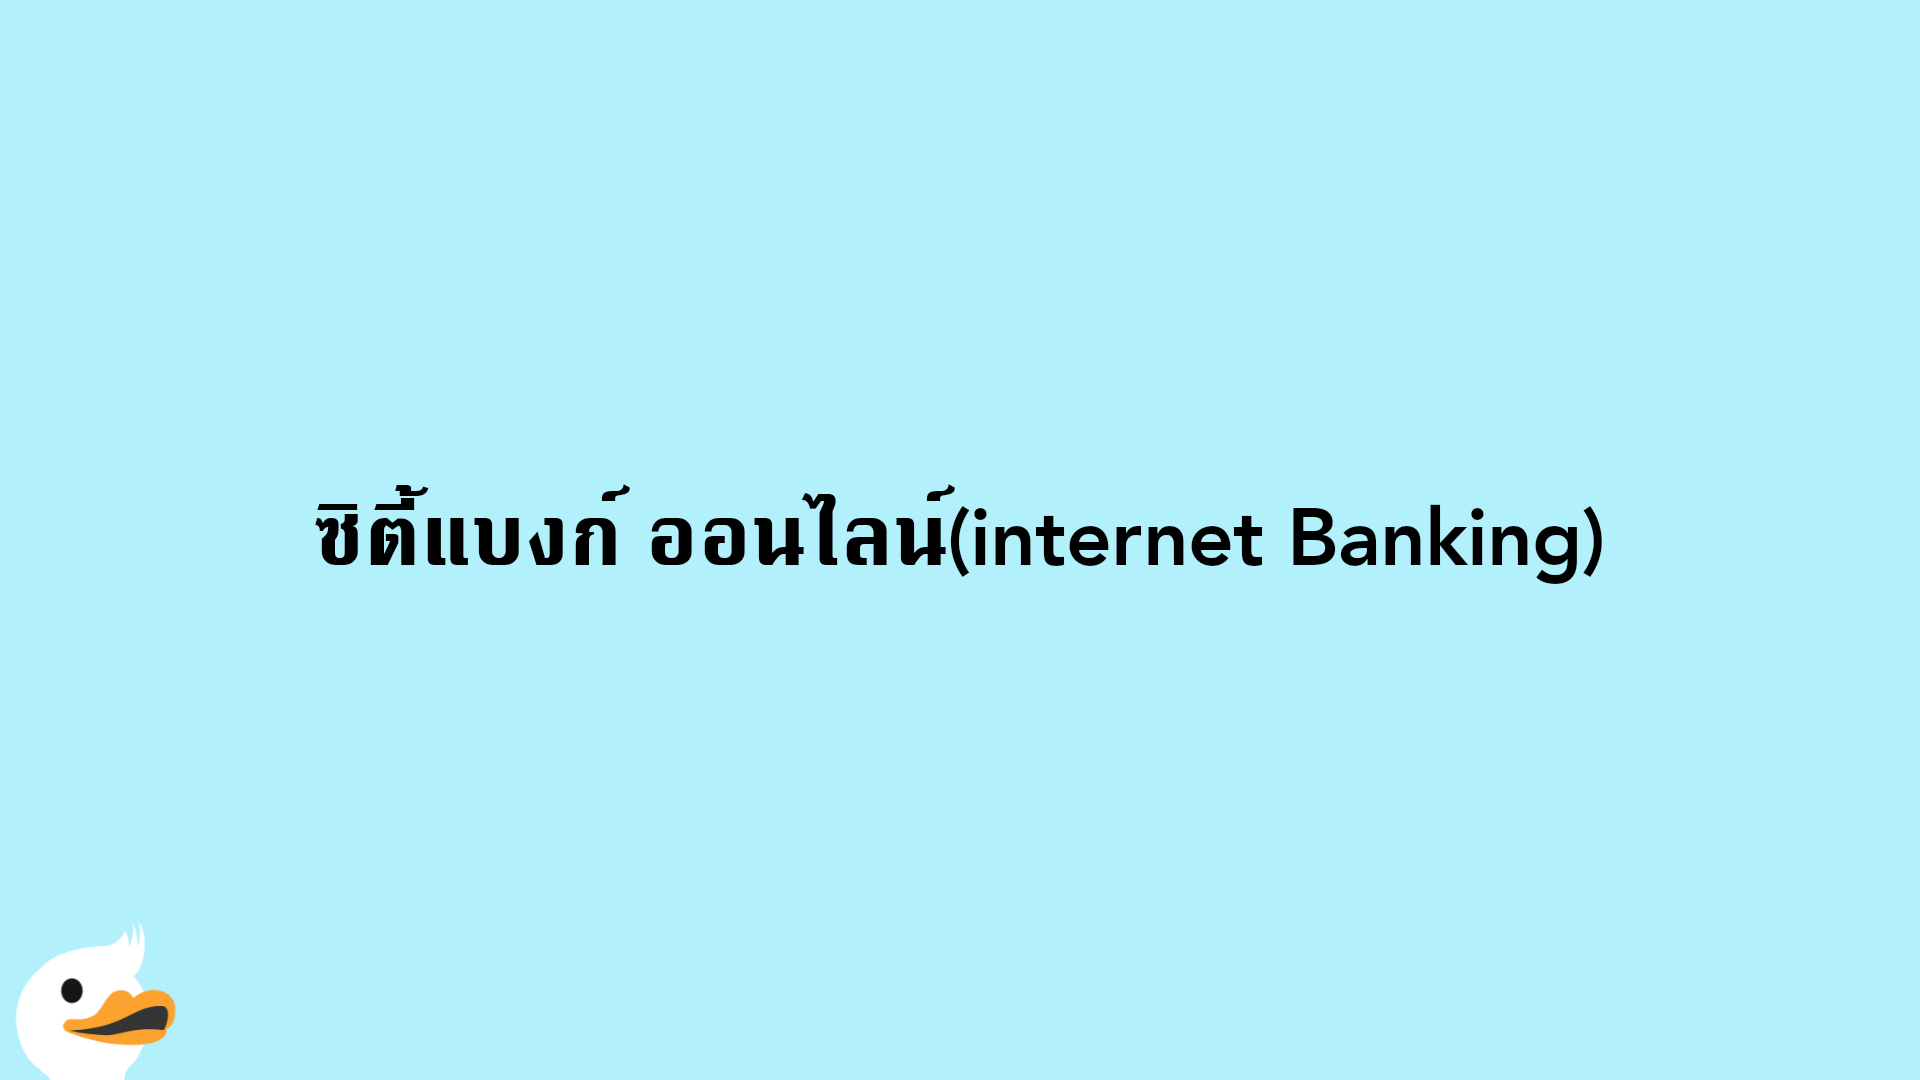 ซิตี้แบงก์ ออนไลน์(internet Banking)